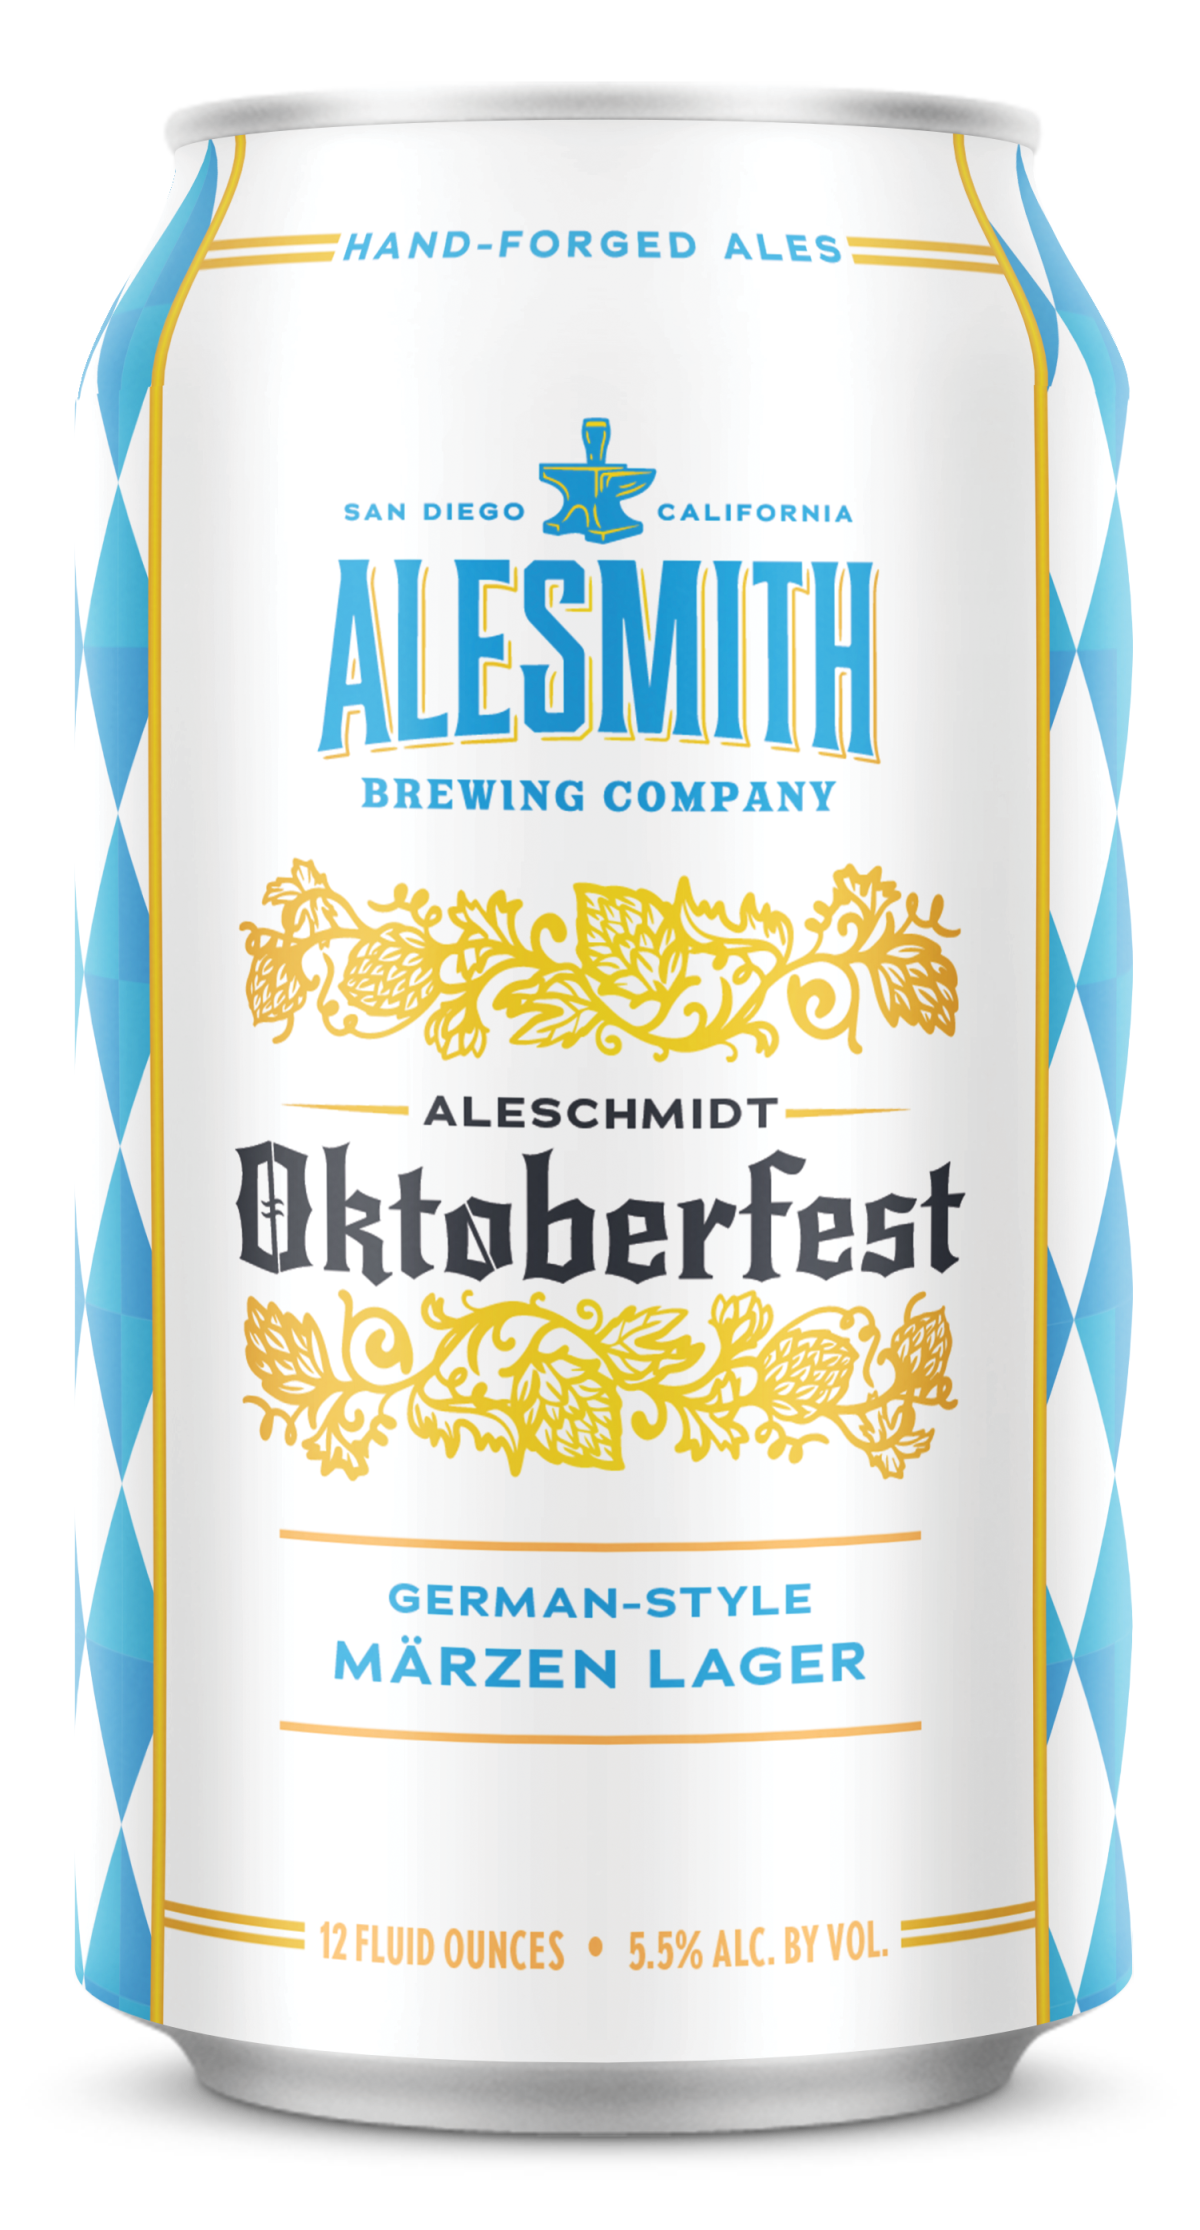 AleSchmidt Oktoberfest, a German-style Marzenlager from AleSmith